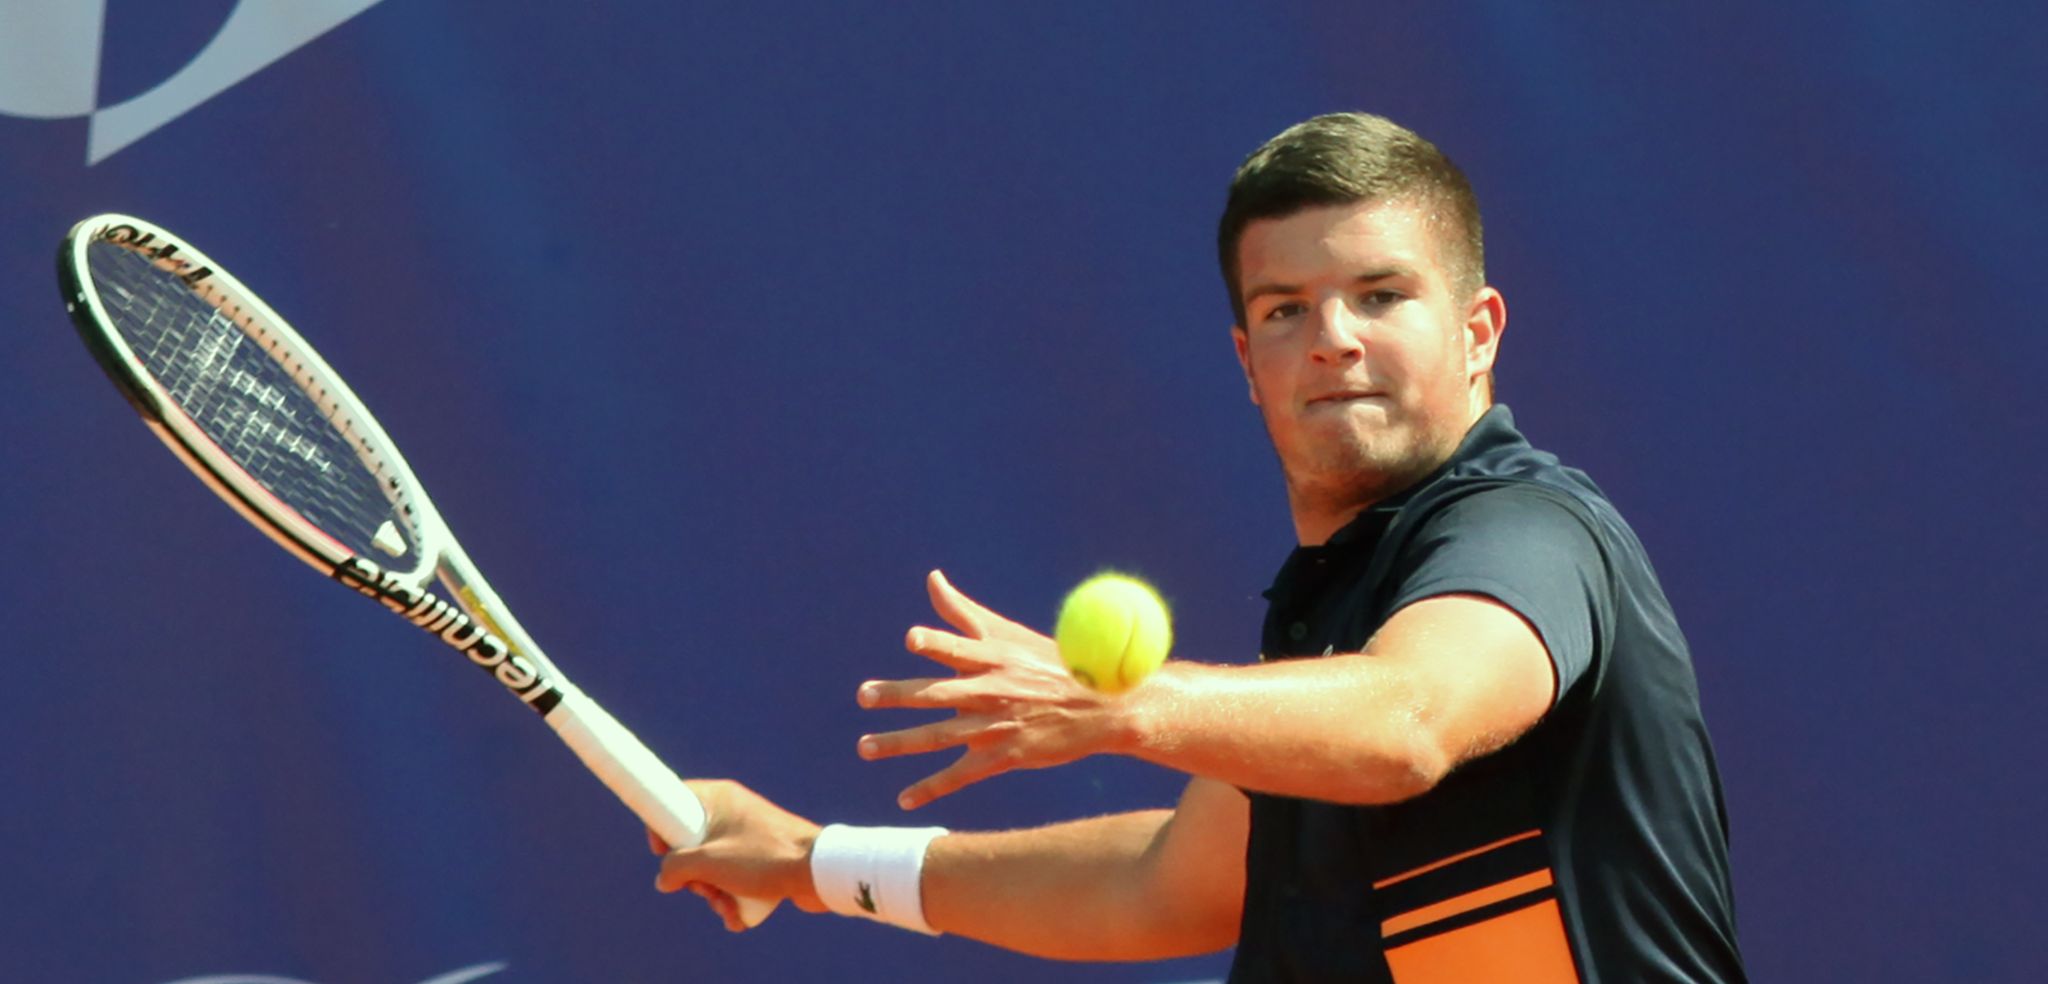 Fantastični Mili Poljičak prvi Hrvat s naslovom juniorskog pobjednika Wimbledona u singlu!